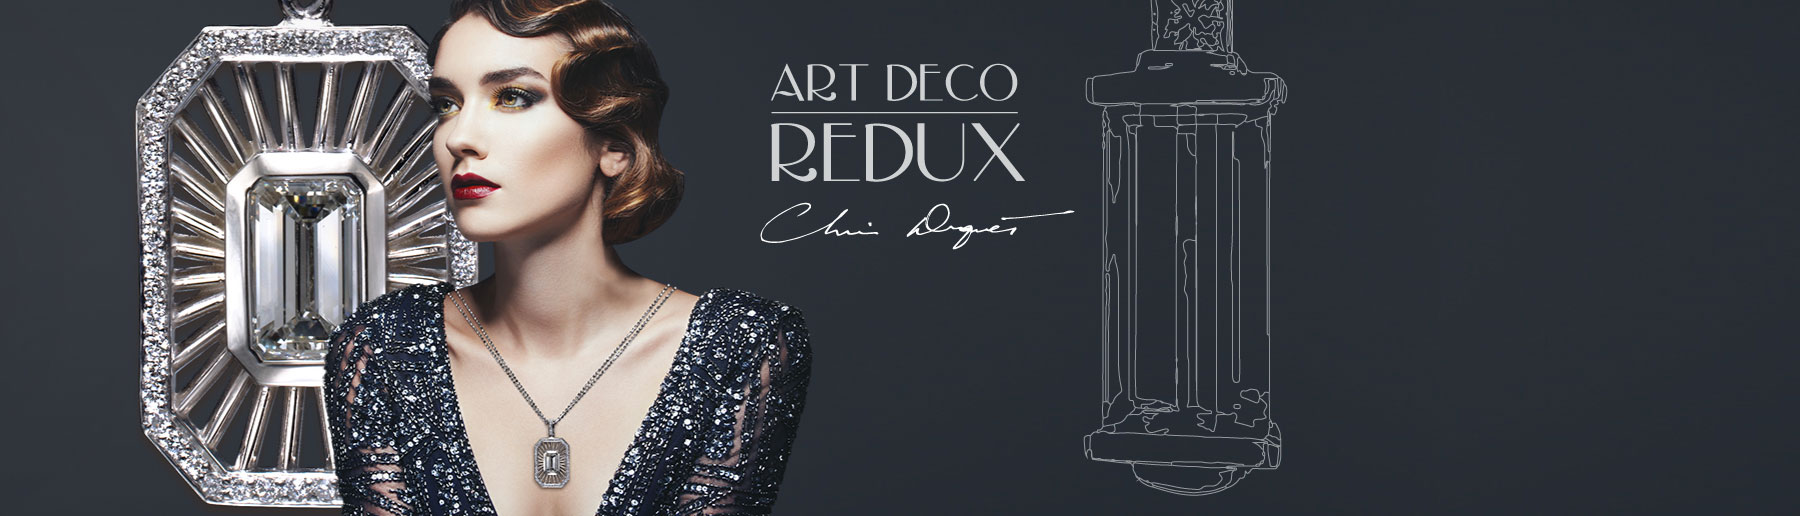 Art Deco Redux by Christopher Duquet ... Inspiration